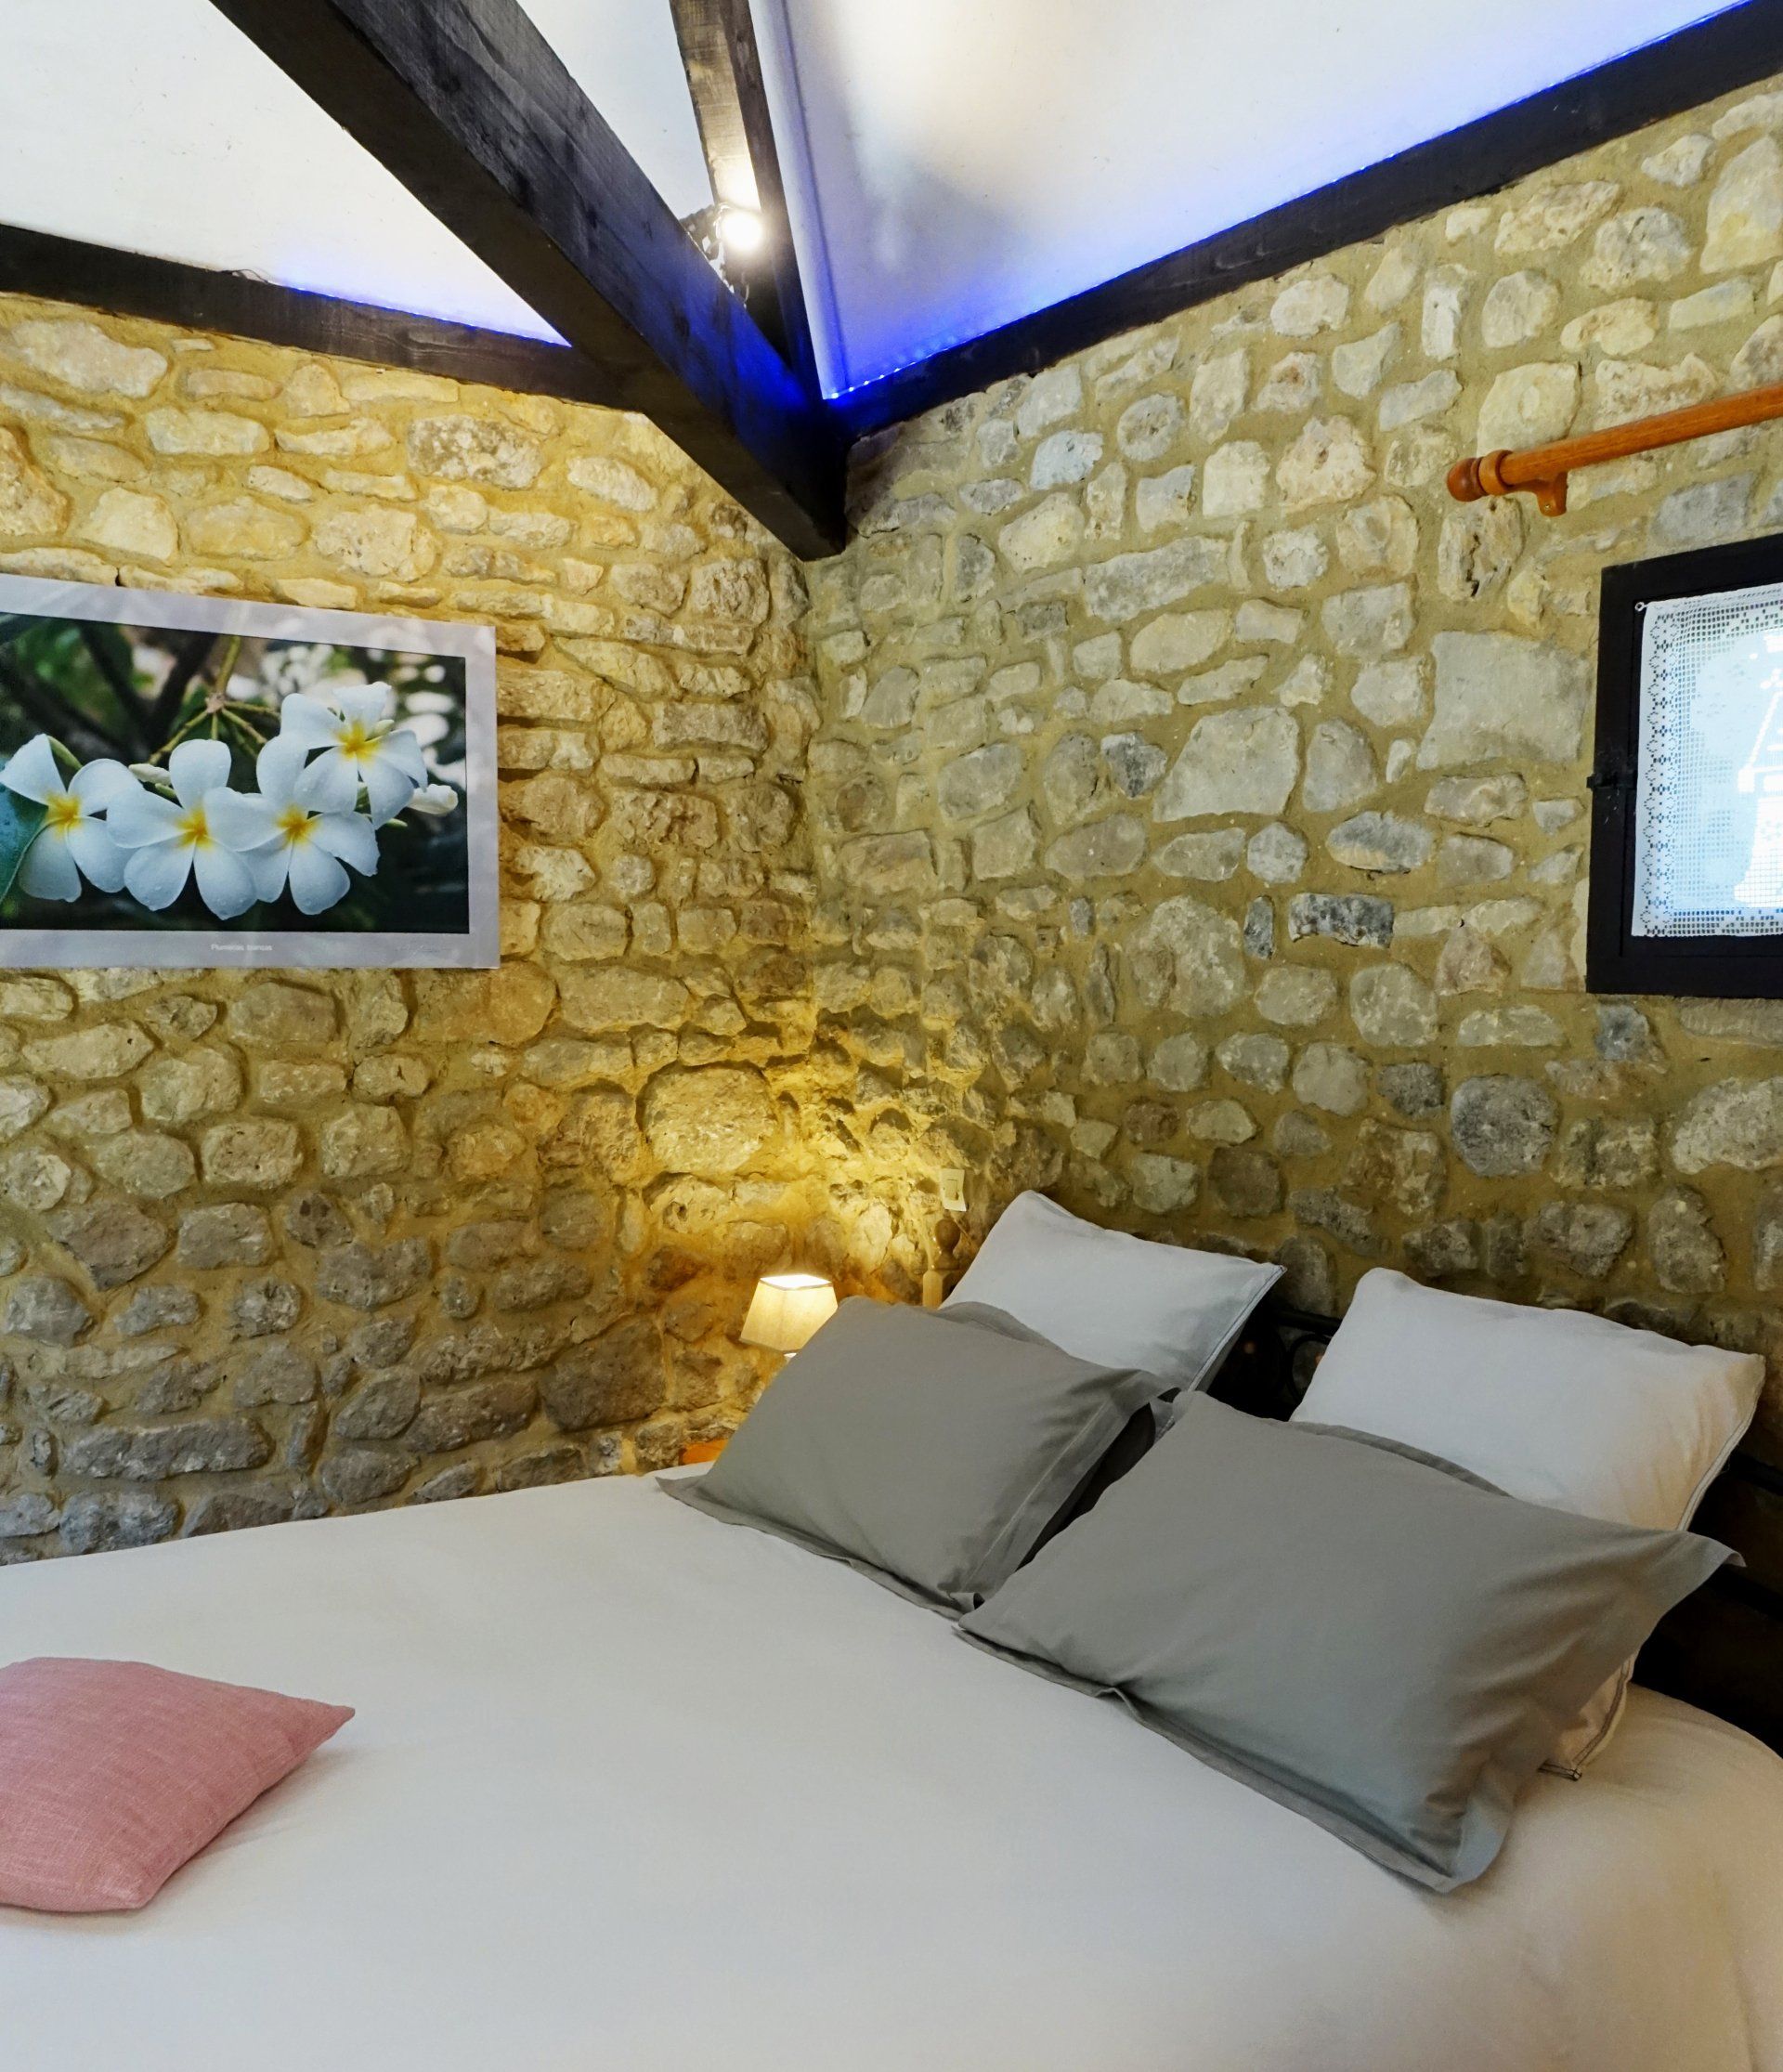 Vista interior de la habitacion La Borie, la cama, foto de las flores blancas y muro de piedras. iluminacion : lampara de mesita de noche.